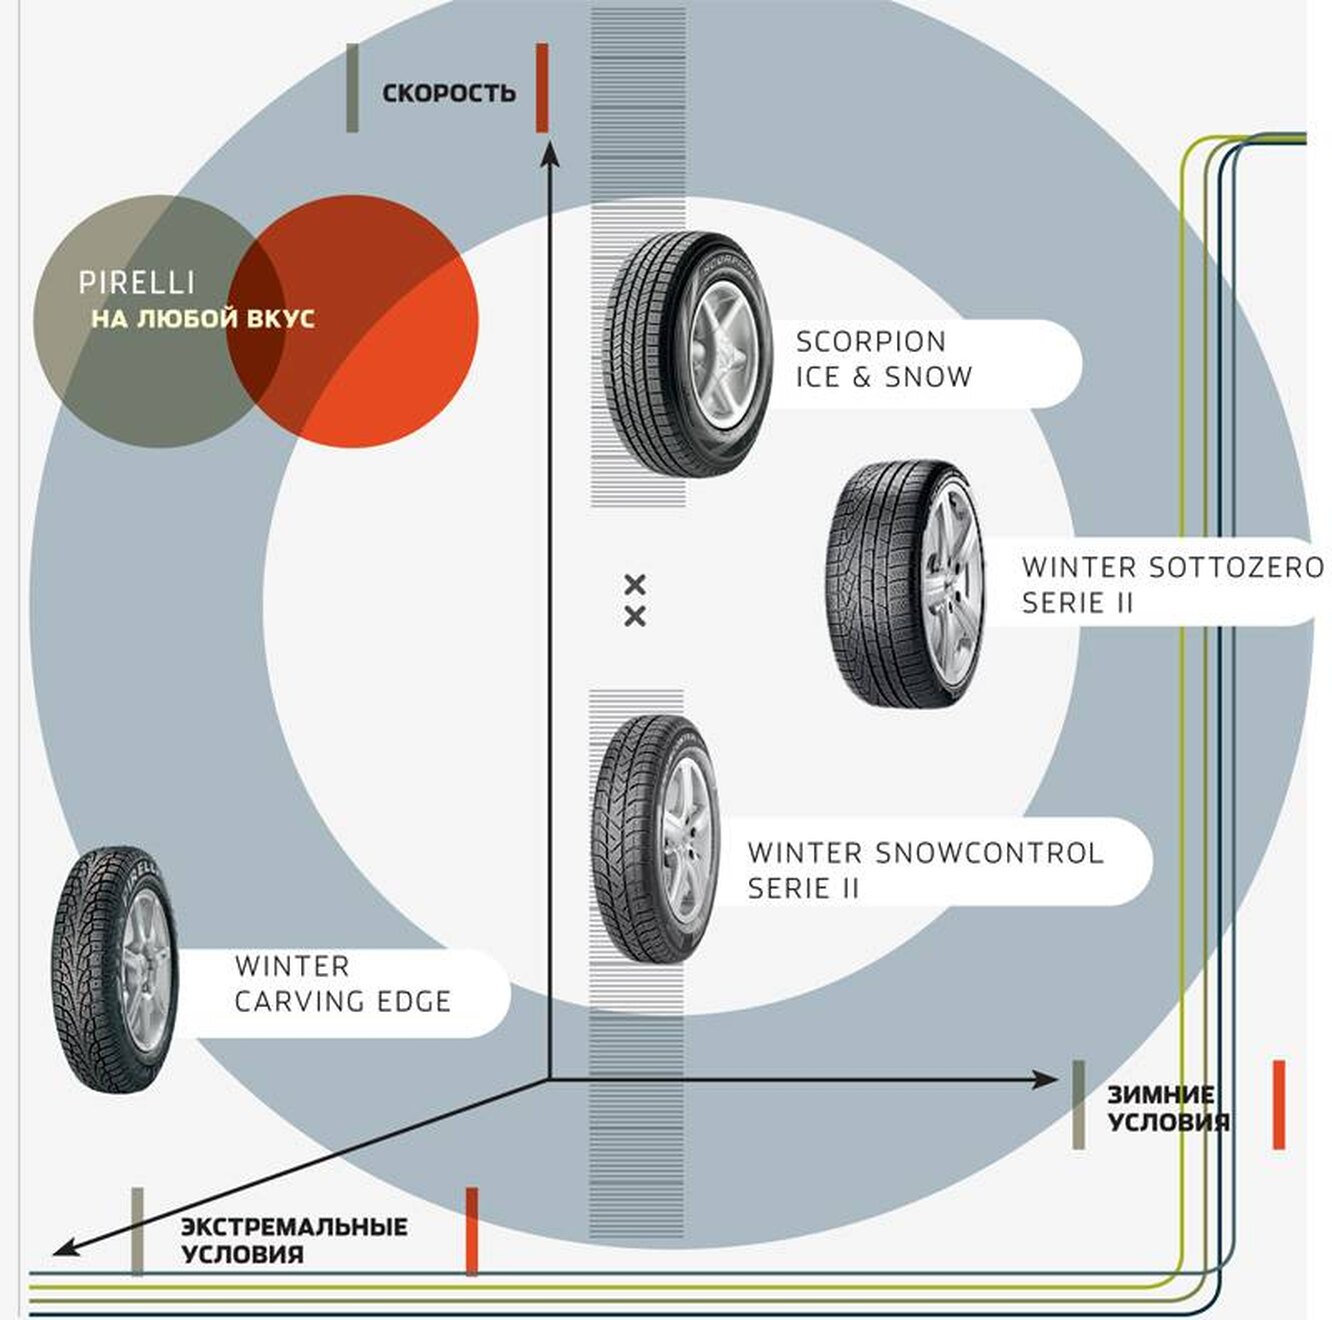 Как определить какое колесо ставить. Пирелли резина направление вращения. Шины Pirelli направление вращения. Направление вращения шины. Направление вращения колеса на шине.